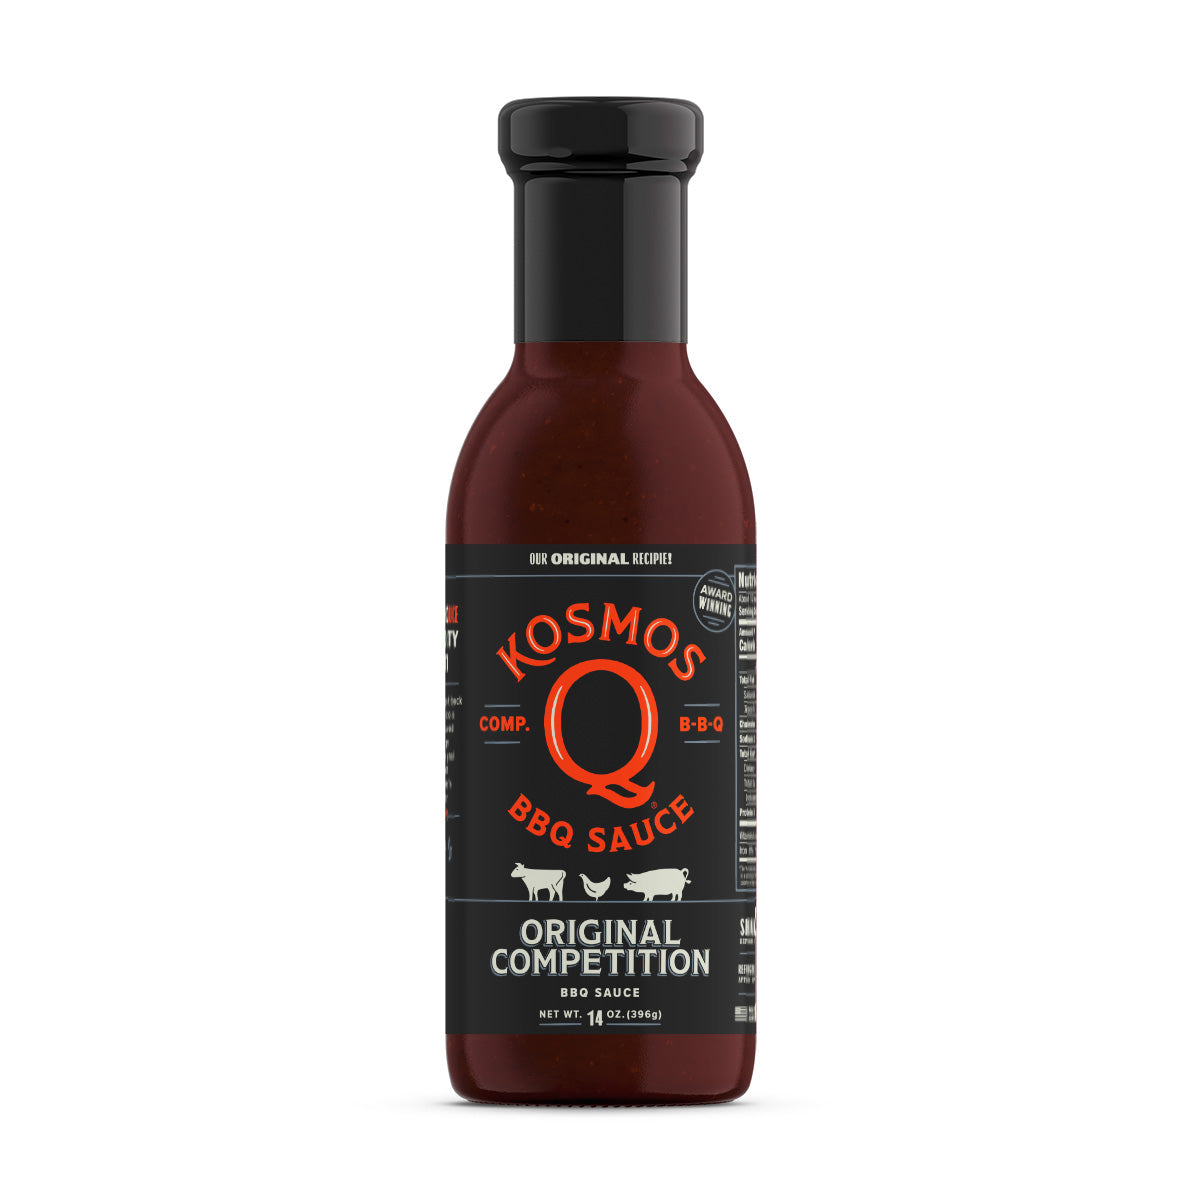 https://kosmosq.com/cdn/shop/products/kosmo-s-q-bbq-sauce-kosmos-q-competition-bbq-sauce-32510511841439_1600x.jpg?v=1648952087